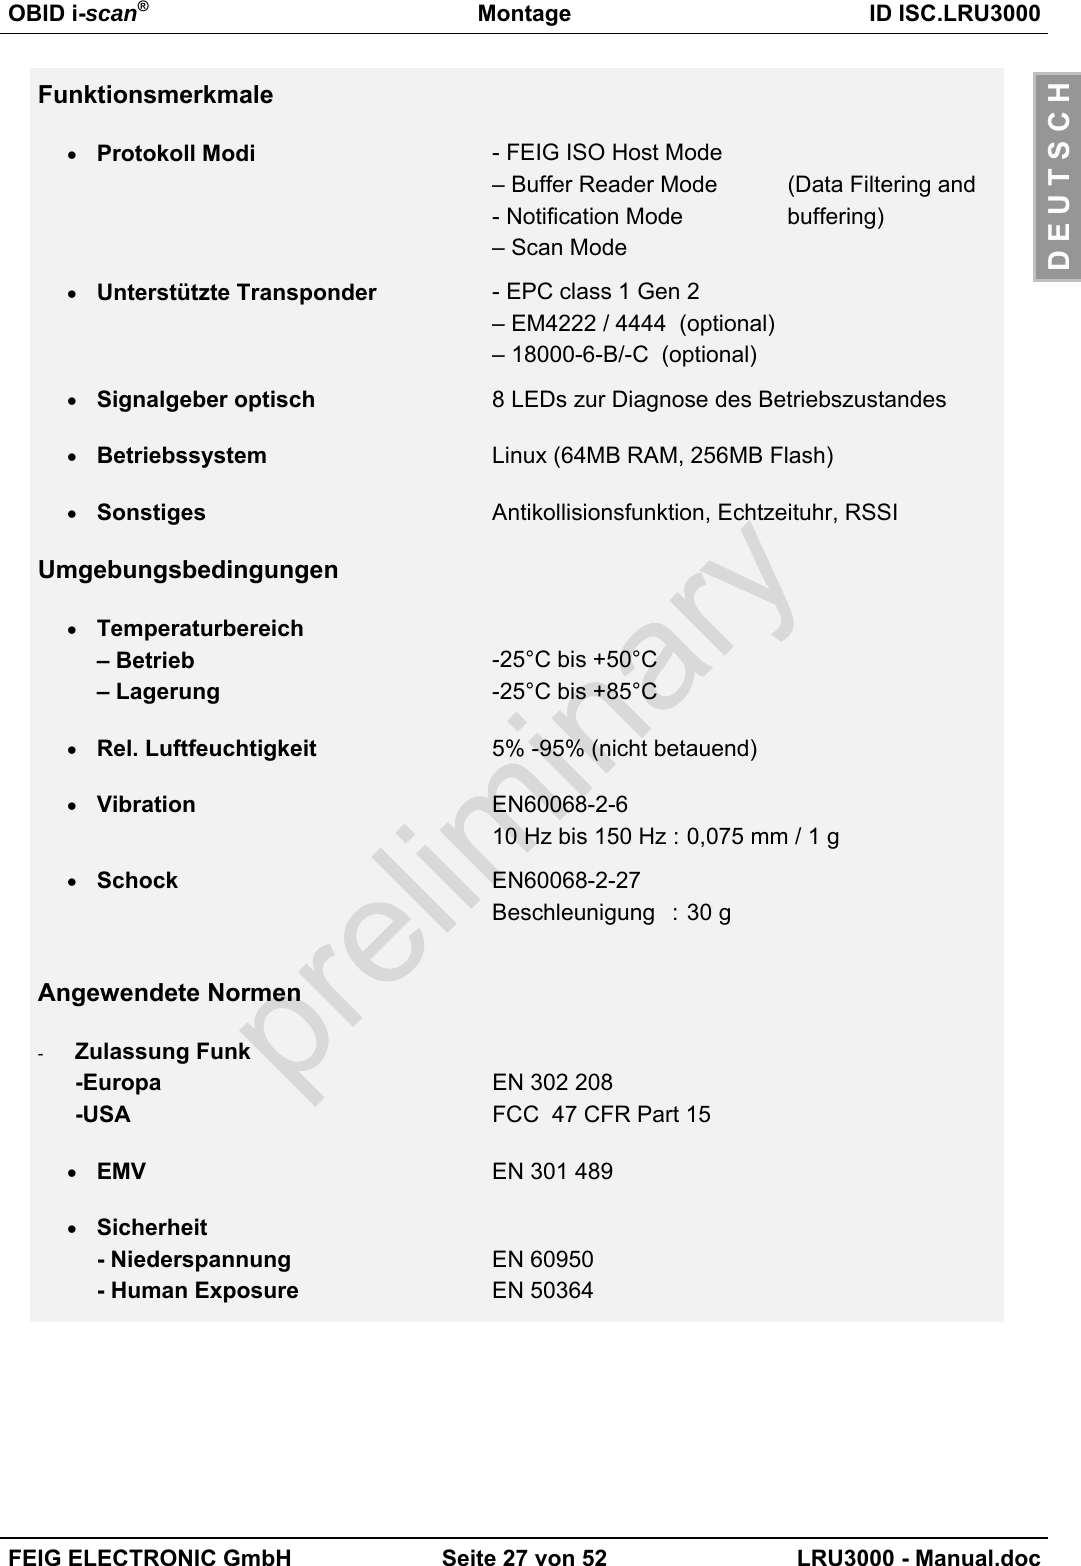 OBID i-scan®Montage ID ISC.LRU3000FEIG ELECTRONIC GmbH Seite 27 von 52 LRU3000 - Manual.docD E U T S C HFunktionsmerkmale• Protokoll Modi - FEIG ISO Host Mode– Buffer Reader Mode  (Data Filtering and- Notification Mode  buffering)– Scan Mode• Unterstützte Transponder - EPC class 1 Gen 2– EM4222 / 4444  (optional)– 18000-6-B/-C  (optional)• Signalgeber optisch 8 LEDs zur Diagnose des Betriebszustandes• Betriebssystem Linux (64MB RAM, 256MB Flash)• Sonstiges Antikollisionsfunktion, Echtzeituhr, RSSIUmgebungsbedingungen• Temperaturbereich– Betrieb– Lagerung-25°C bis +50°C-25°C bis +85°C• Rel. Luftfeuchtigkeit 5% -95% (nicht betauend)• Vibration EN60068-2-610 Hz bis 150 Hz : 0,075 mm / 1 g• Schock EN60068-2-27Beschleunigung : 30 gAngewendete Normen-  Zulassung Funk-Europa-USAEN 302 208FCC  47 CFR Part 15• EMV EN 301 489• Sicherheit- Niederspannung- Human ExposureEN 60950EN 50364